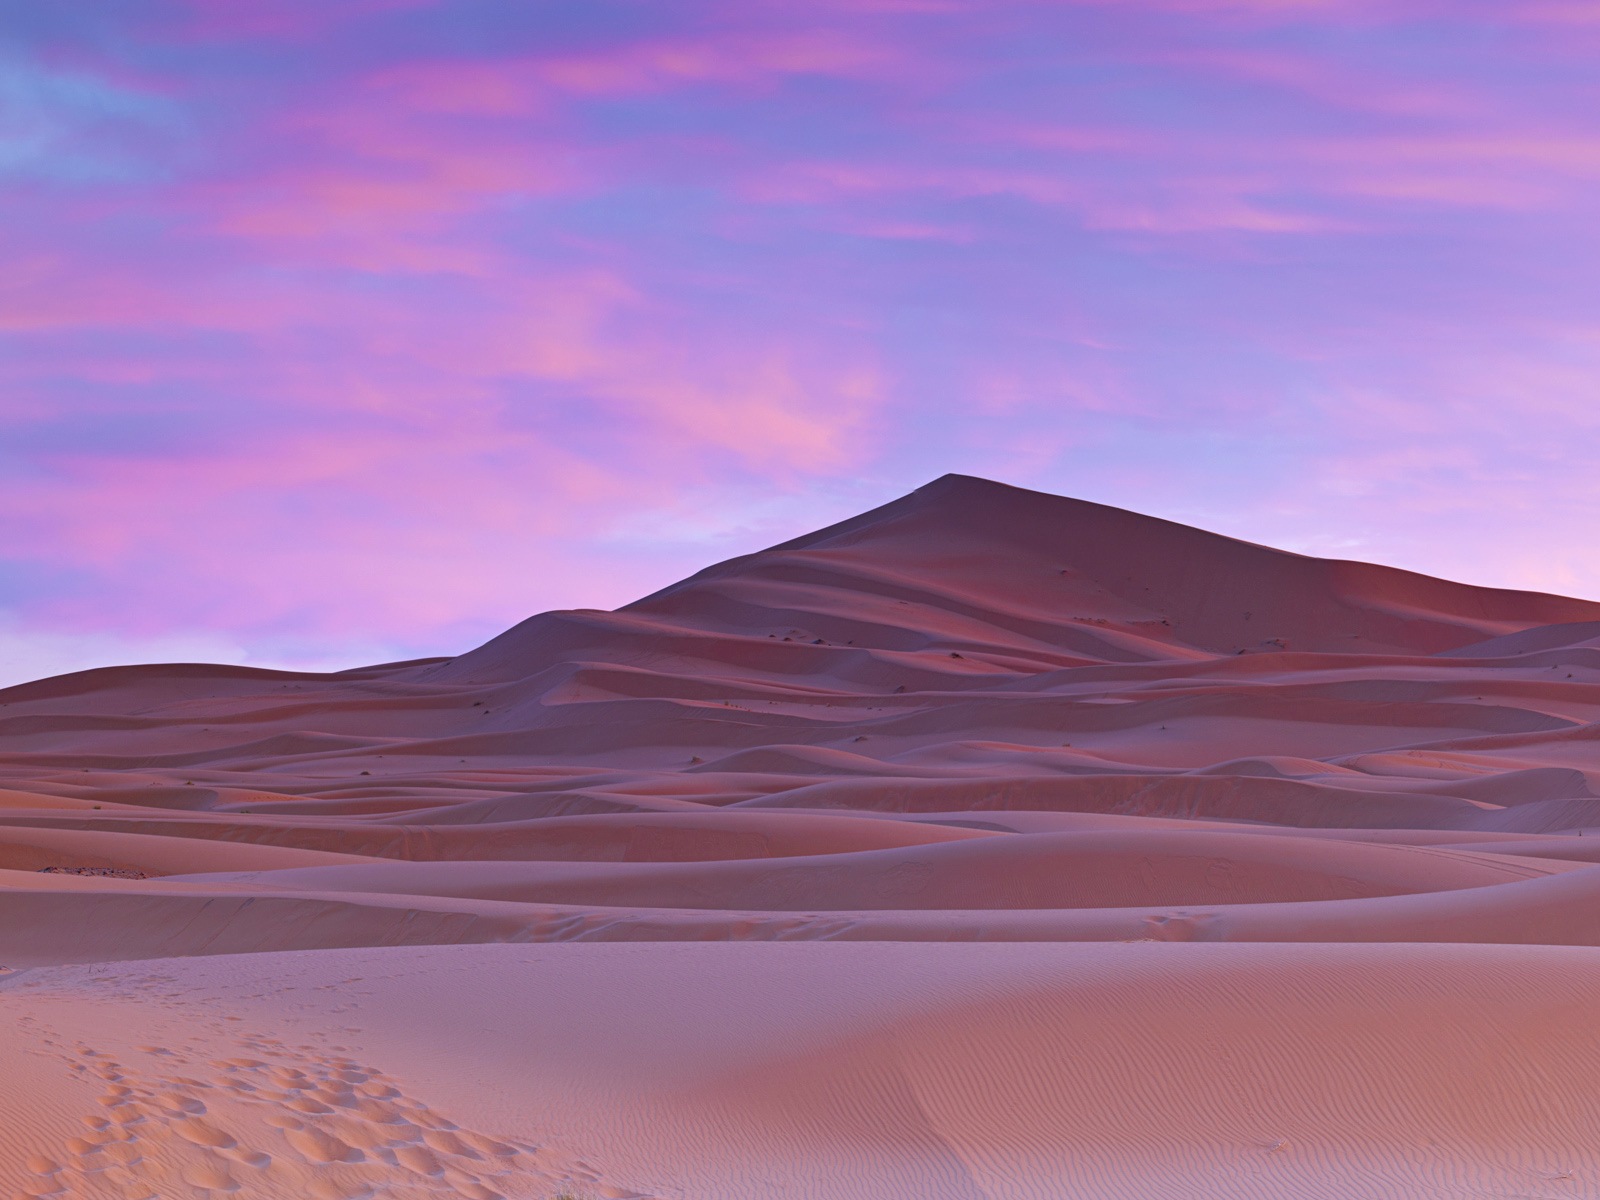 Les déserts chauds et arides, de Windows 8 fonds d'écran widescreen panoramique #1 - 1600x1200